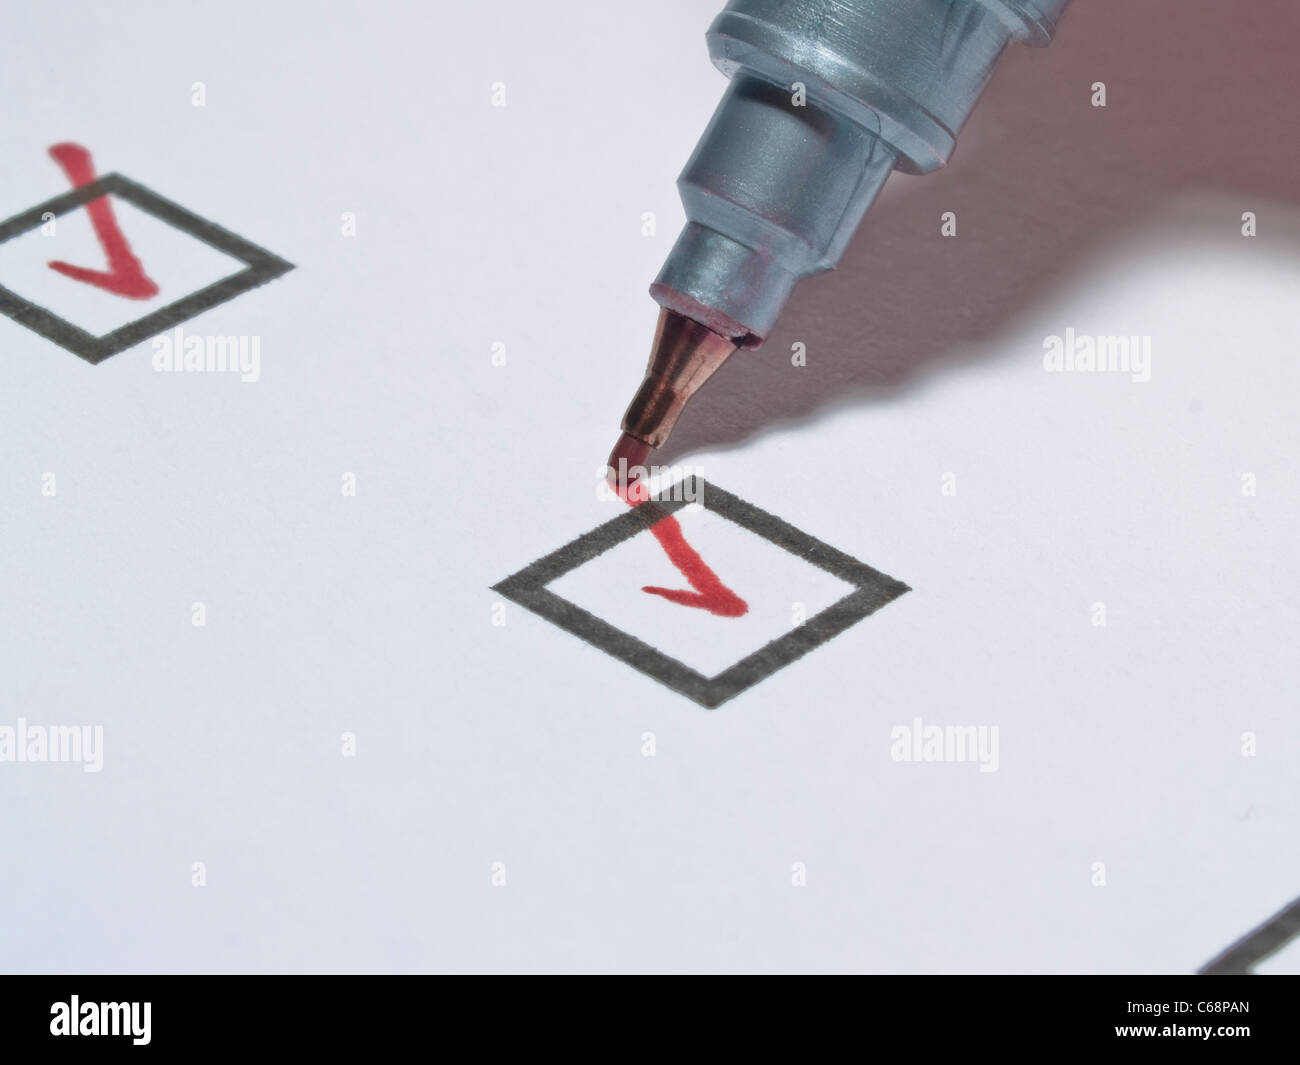 Ein roter Stift hakt eine Kästchen mit à écrire un ab | une broche rouge fait un chèque dans une petite boîte dans une liste Banque D'Images